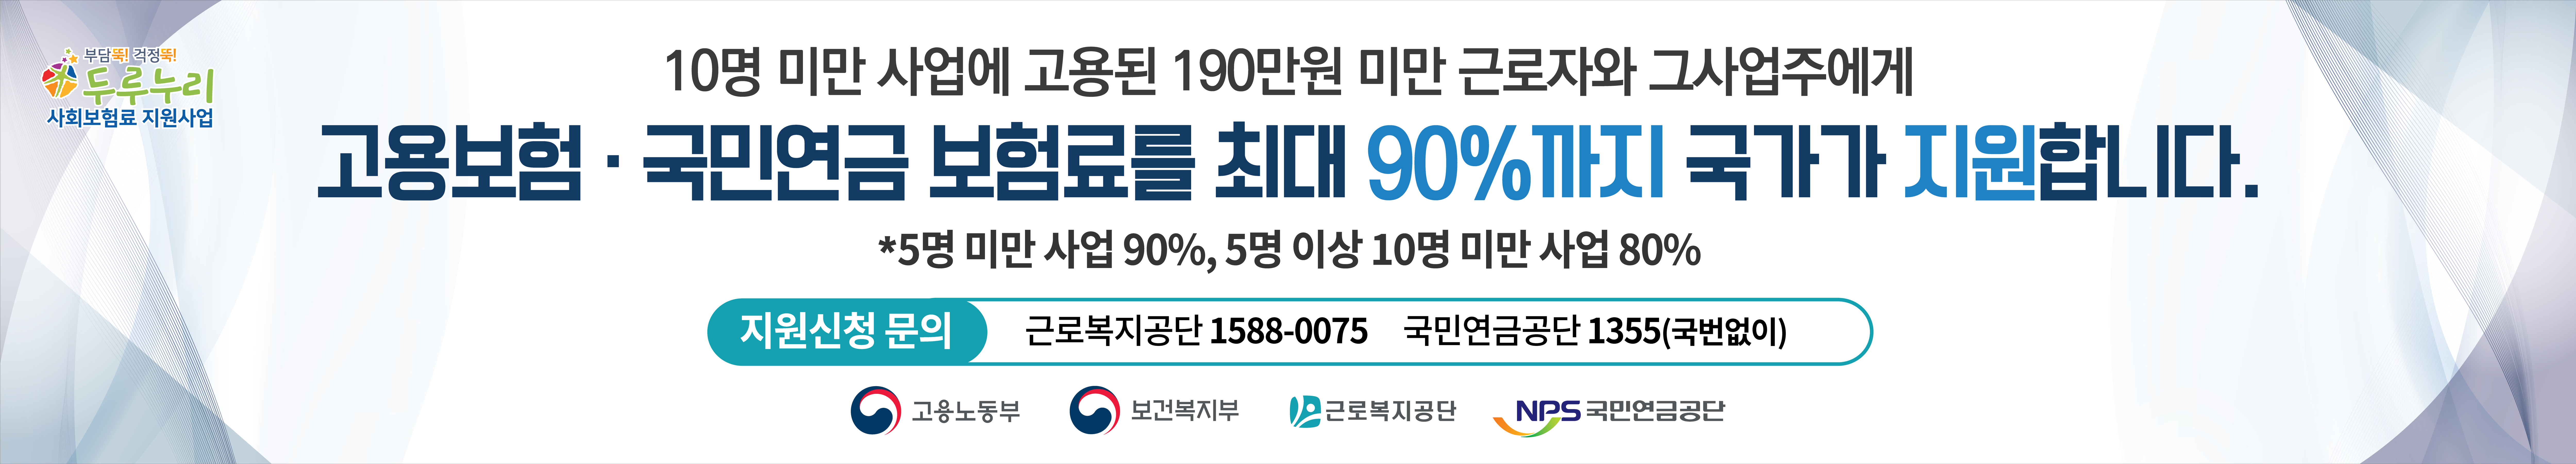 두루누리 사회보험료 지원사업 홍보 현수막